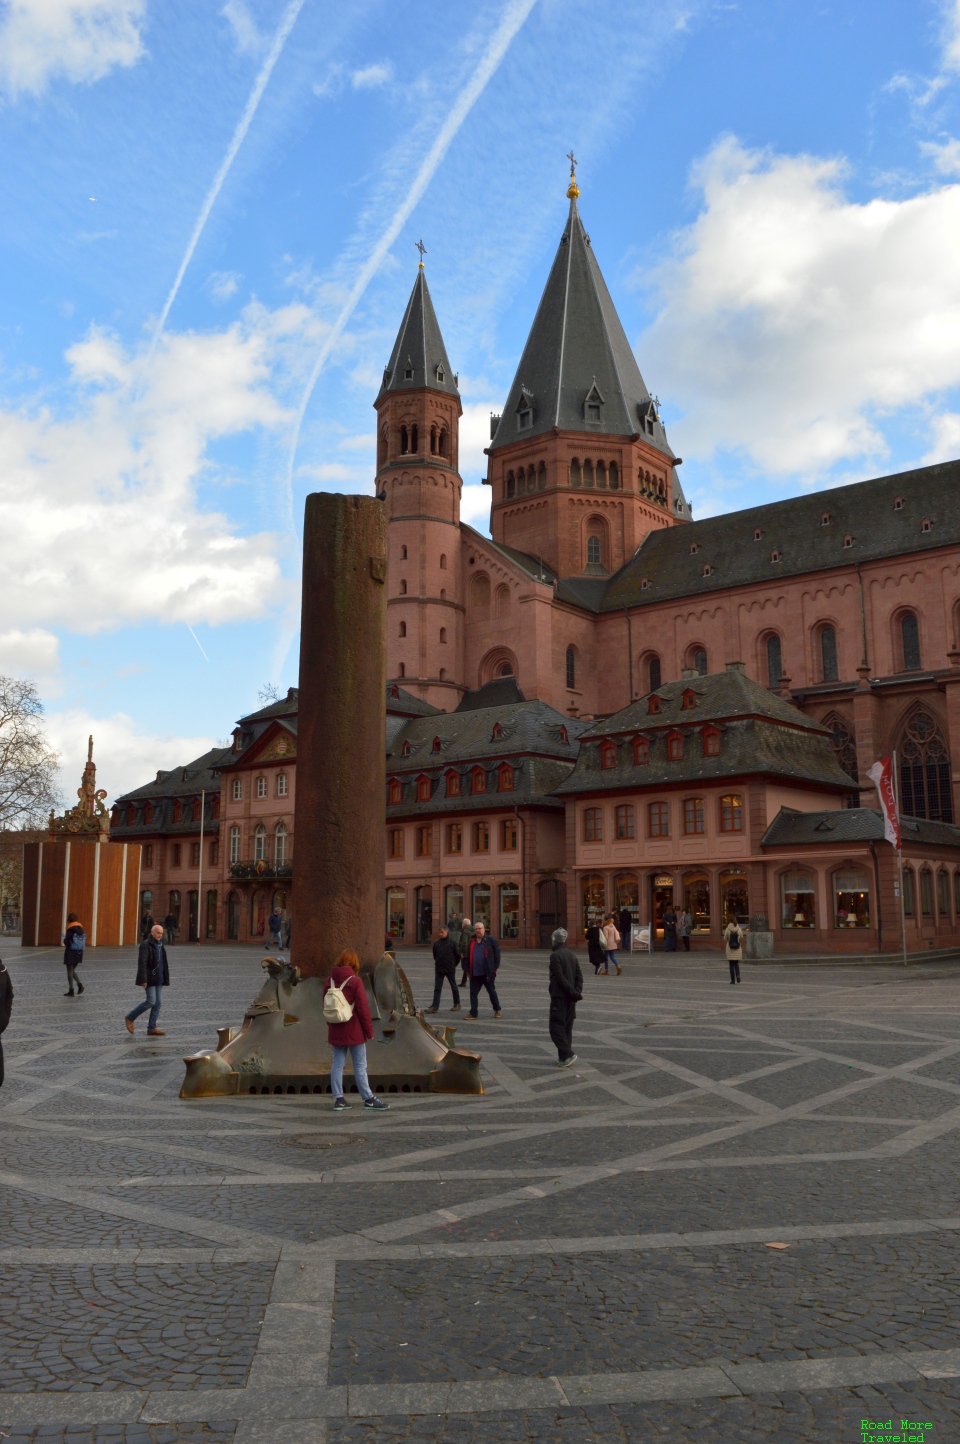 Mainz Cathedral behind Marktplatz pillar